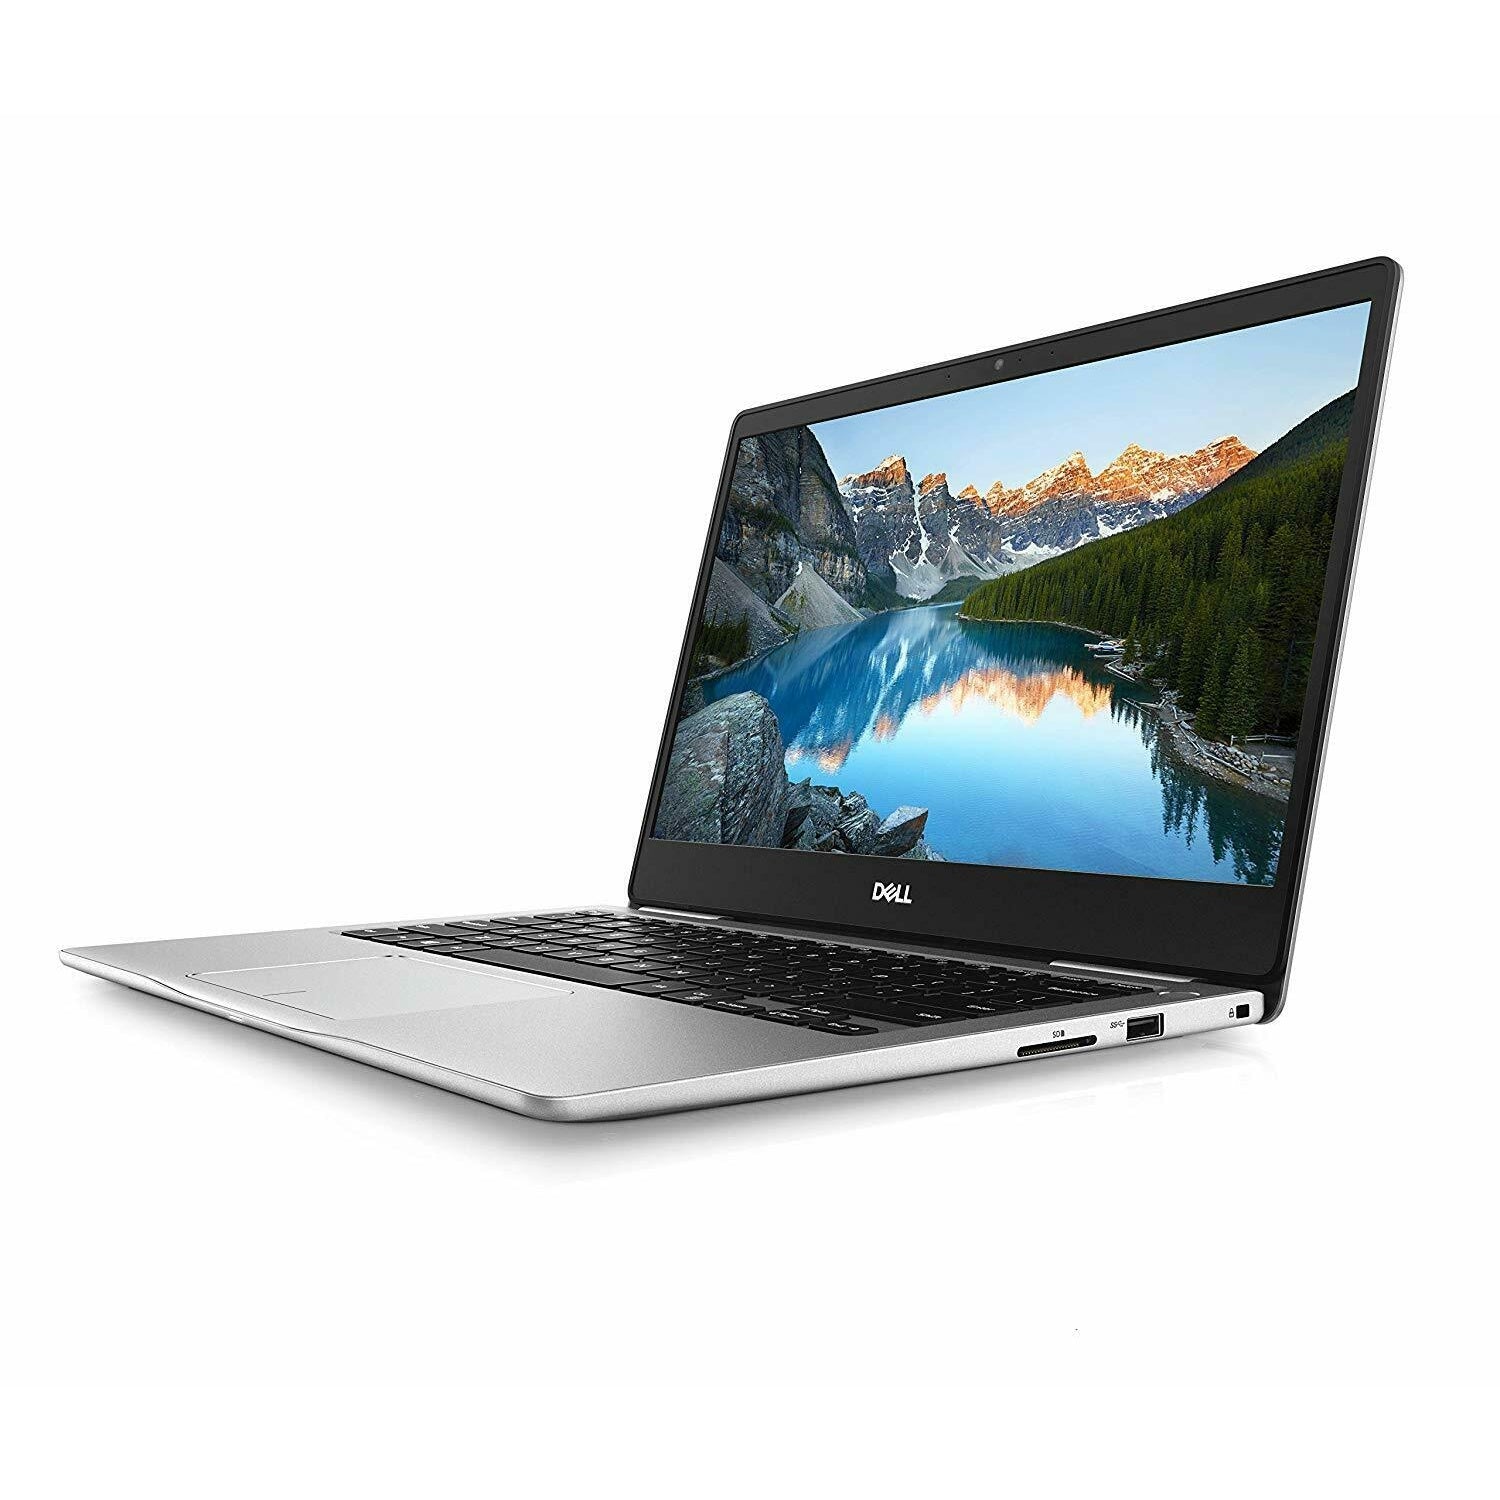 Dell Inspiron 13 7380 Laptop Intel Core i5 8GB RAM 256GB SSD 13.3” - Silver